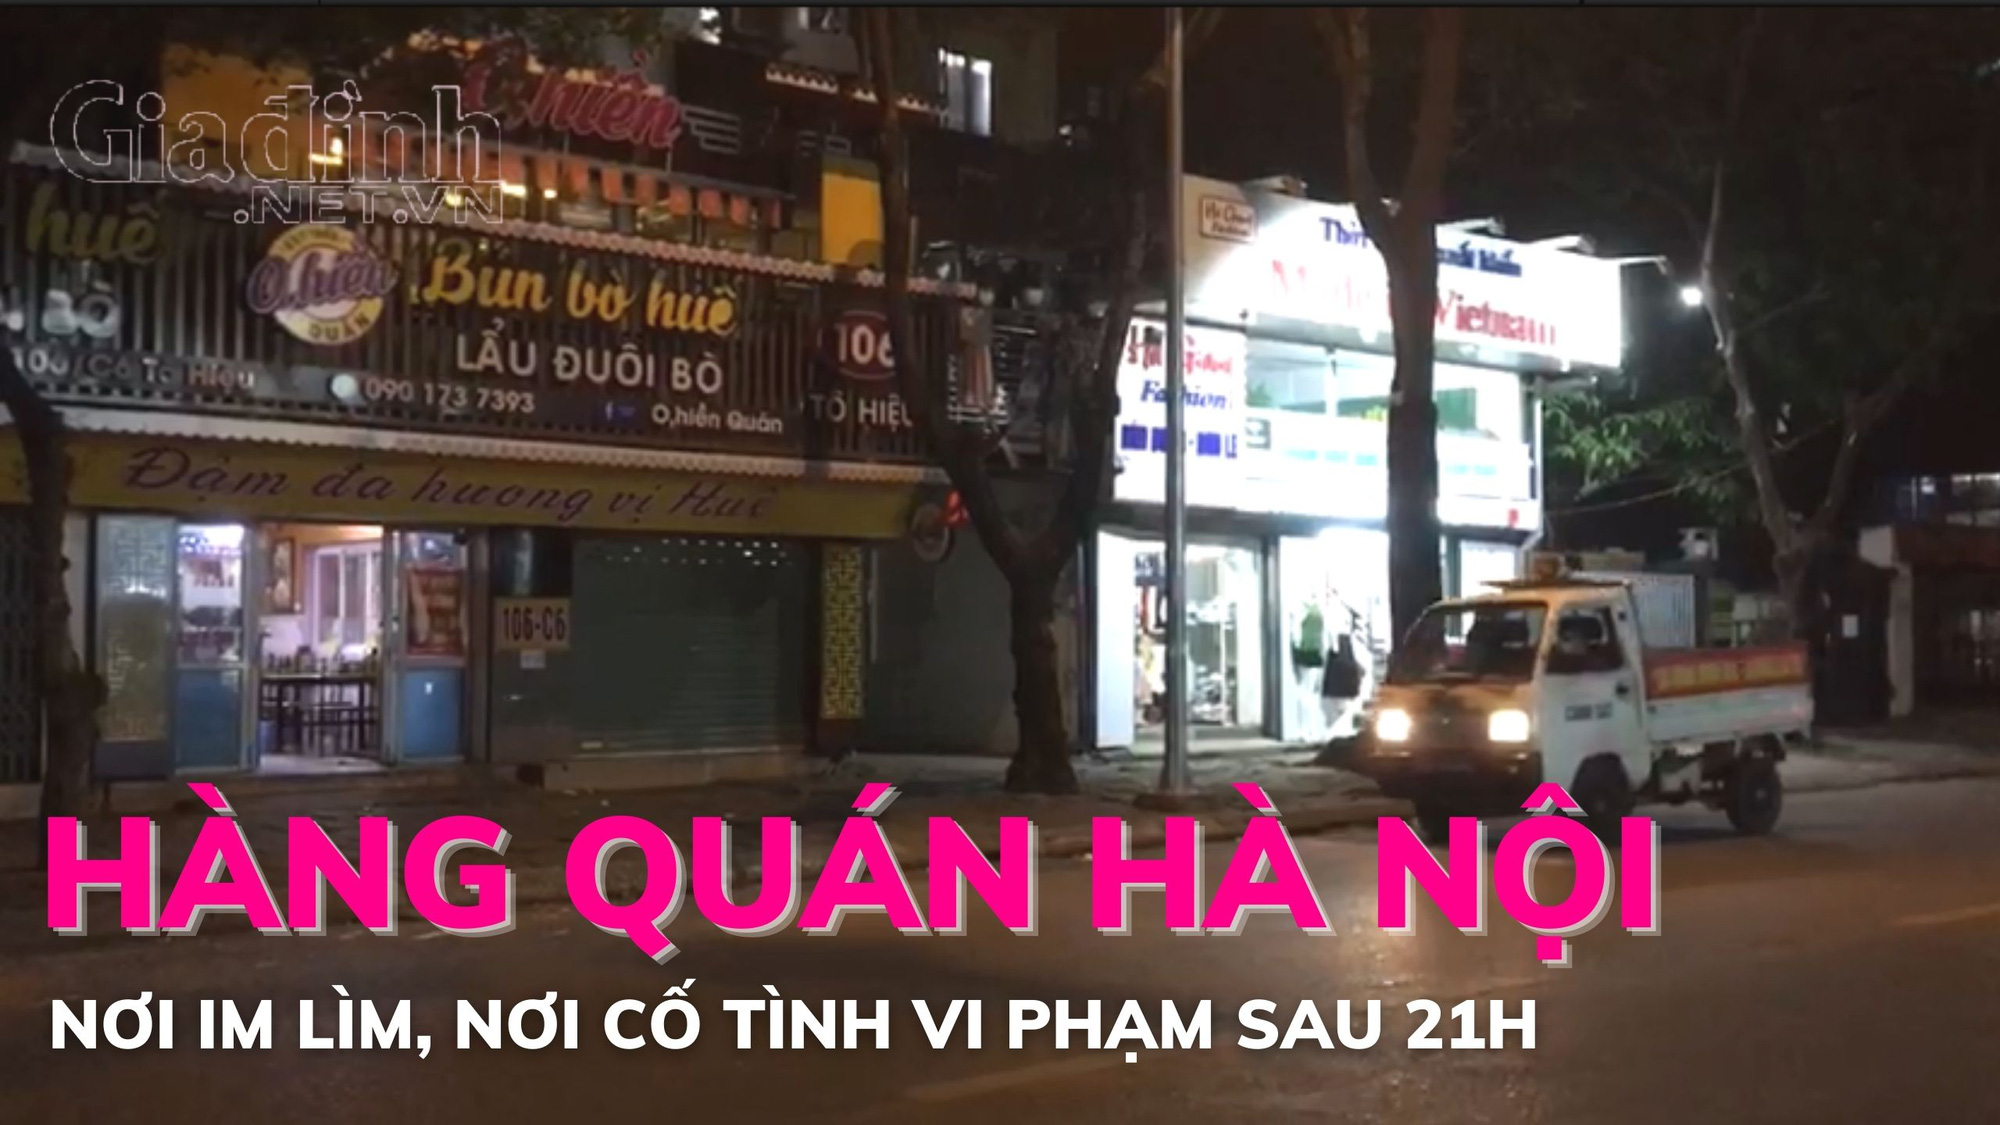 Hàng quán Hà Nội: Nơi tuân thủ quy định phòng chống dịch COVID-19, chỗ cố tình vi phạm sau 21h